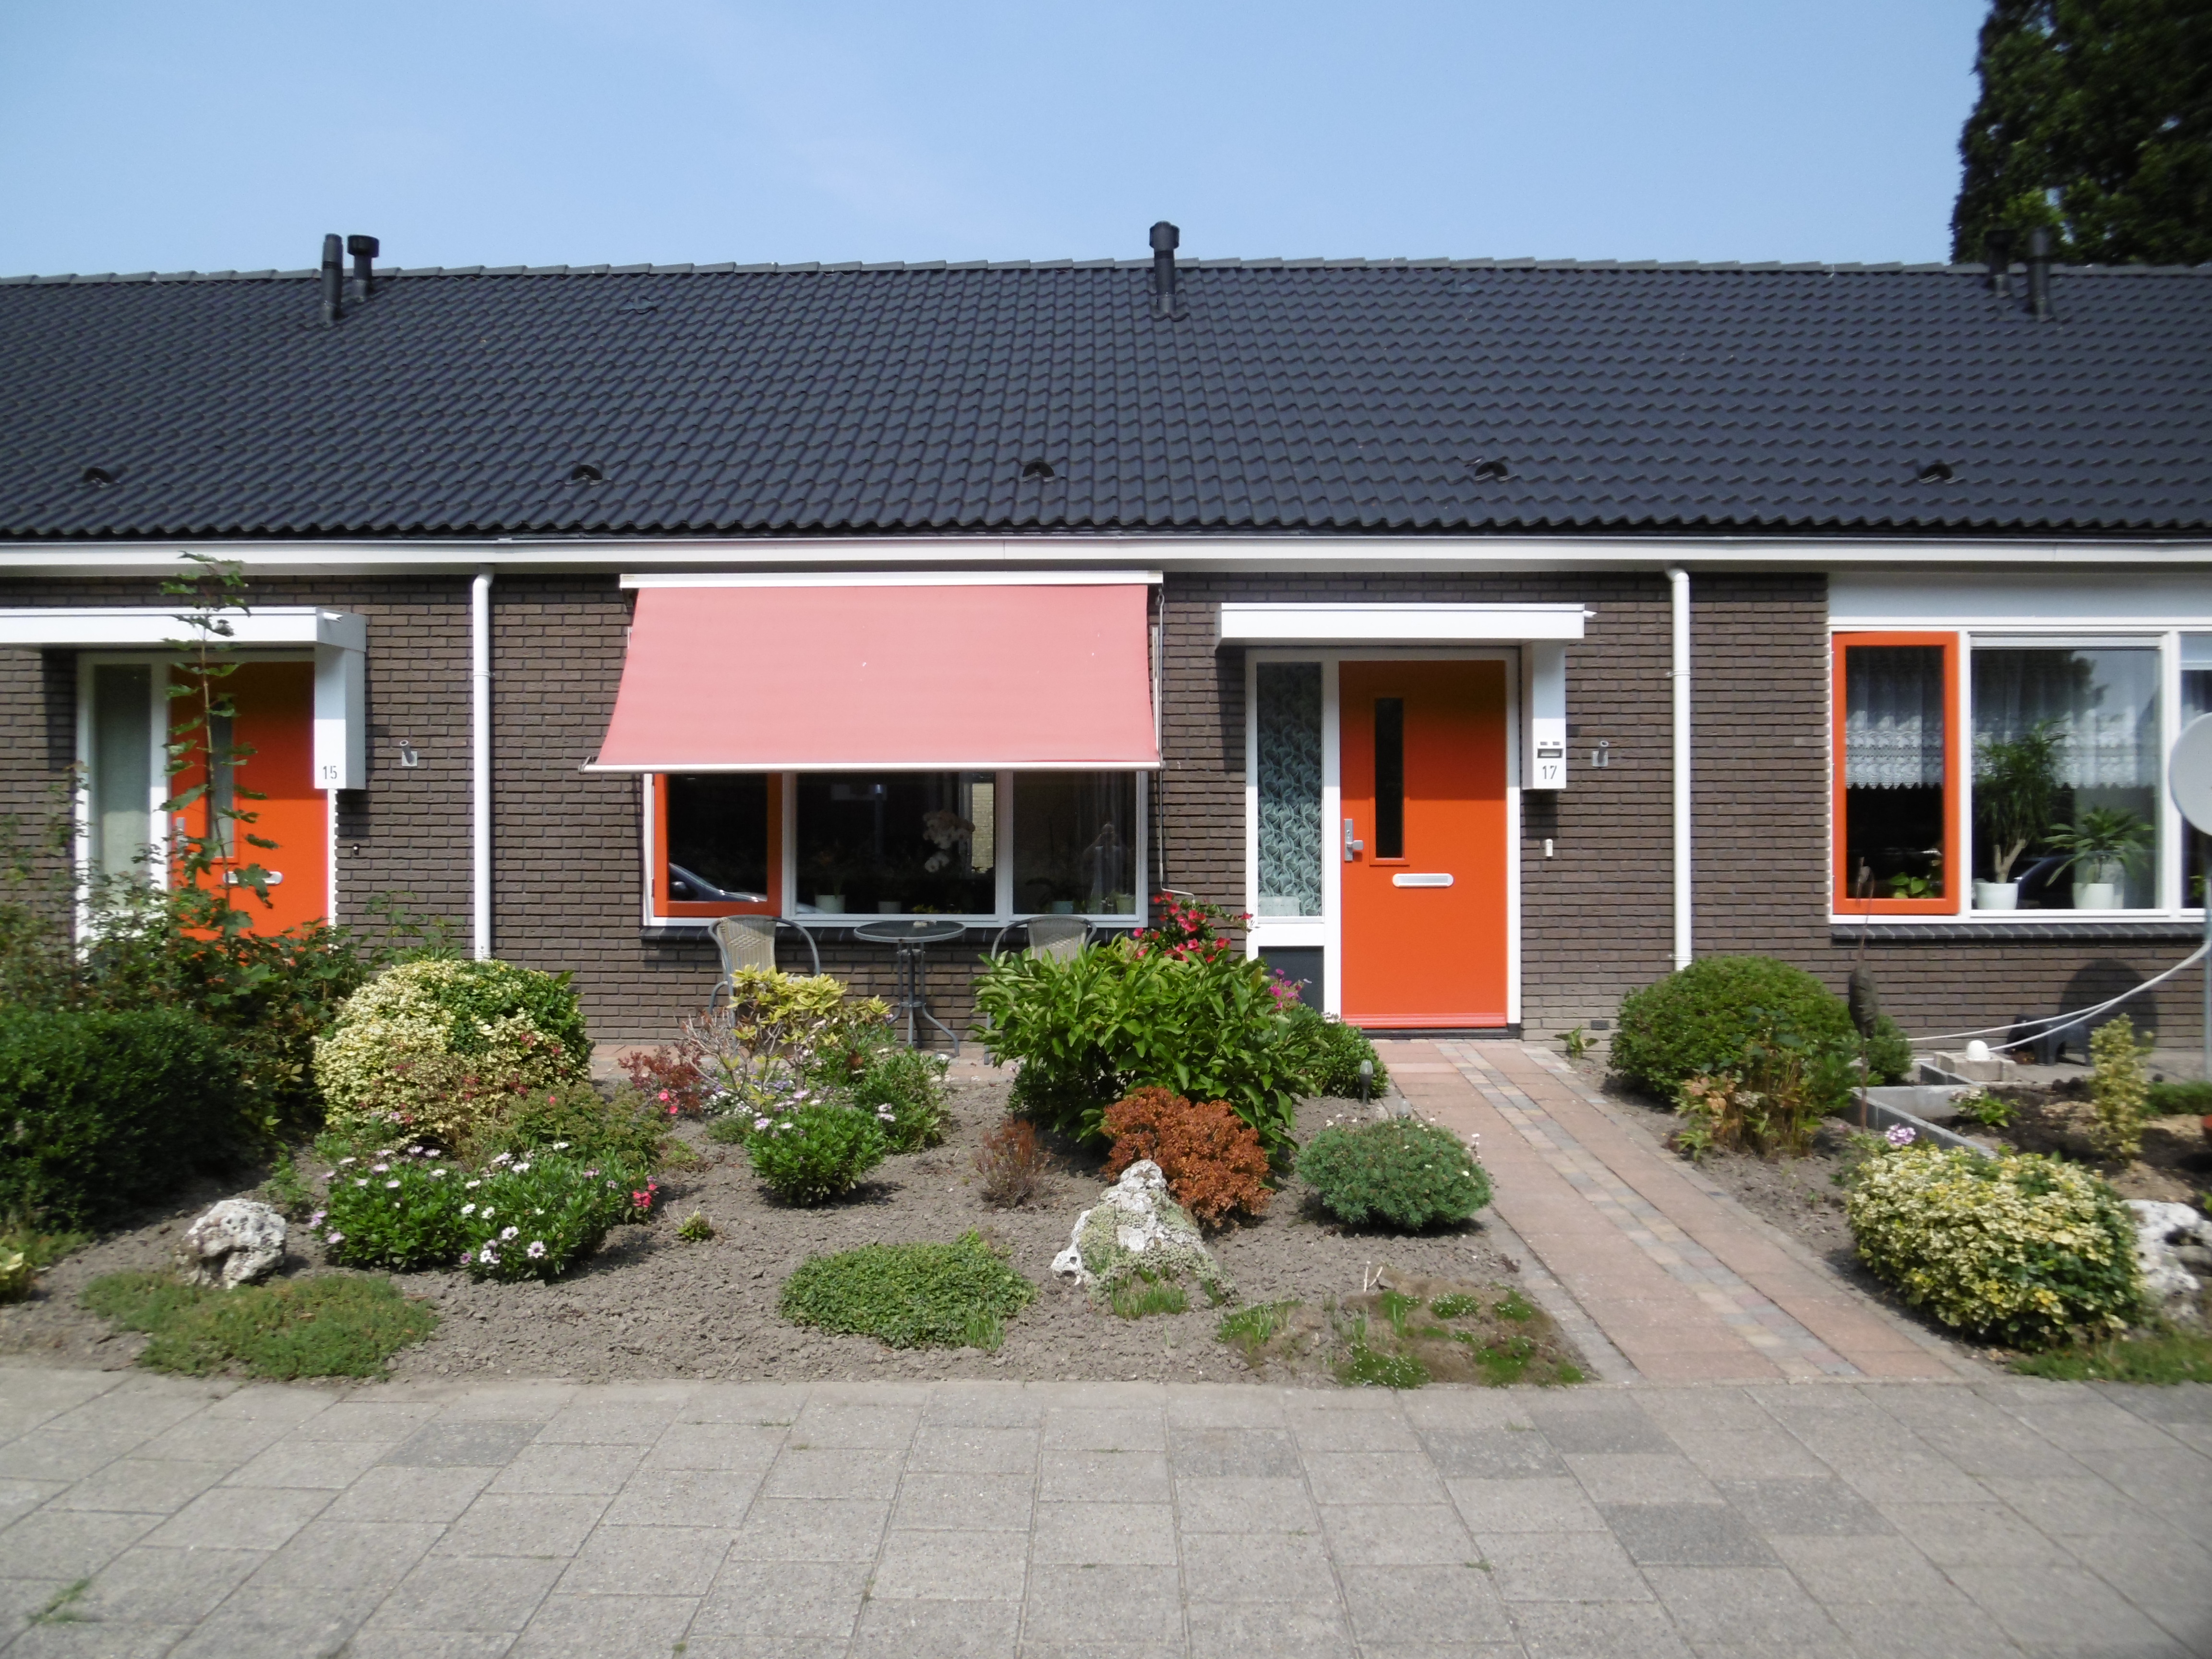 Dwarsstraat 17, 8314 AR Bant, Nederland